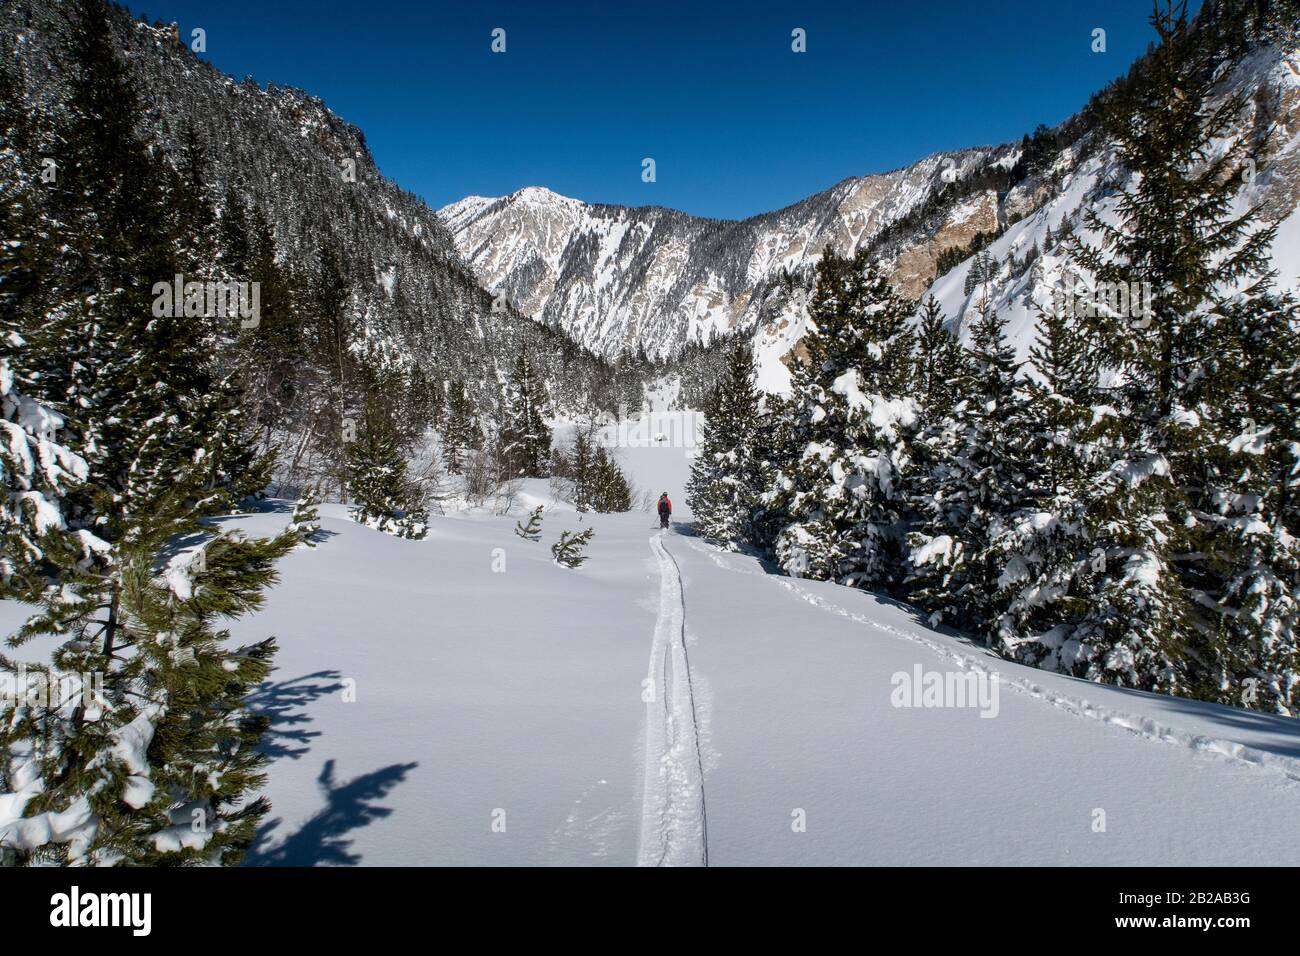 Un hombre de esquí excursiones a través de la Vallée des Avals cerca de la estación alpina francesa de Courchevel después de la nieve fresca en un día soleado. Foto de stock